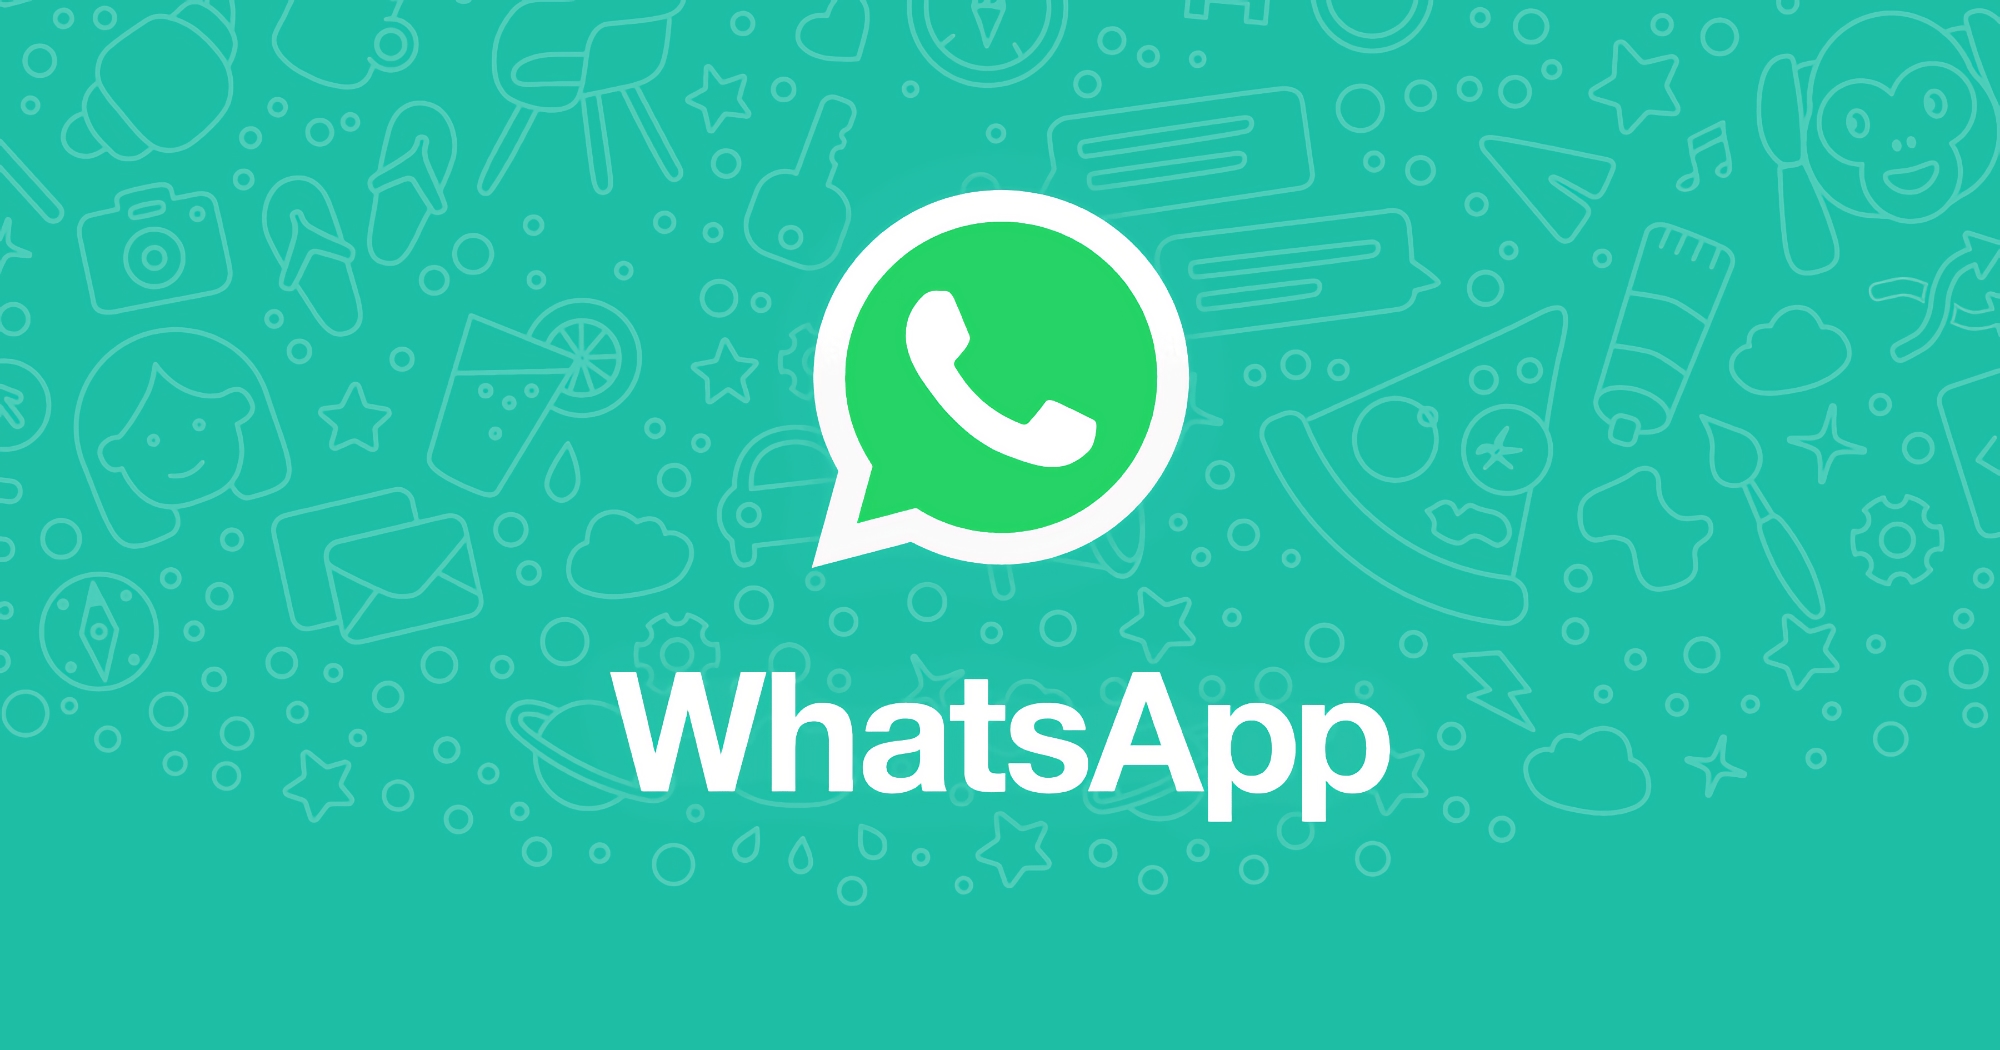 WhatsApp ha la possibilità di trasferire la cronologia da Android a iPhone: ti spieghiamo come farlo